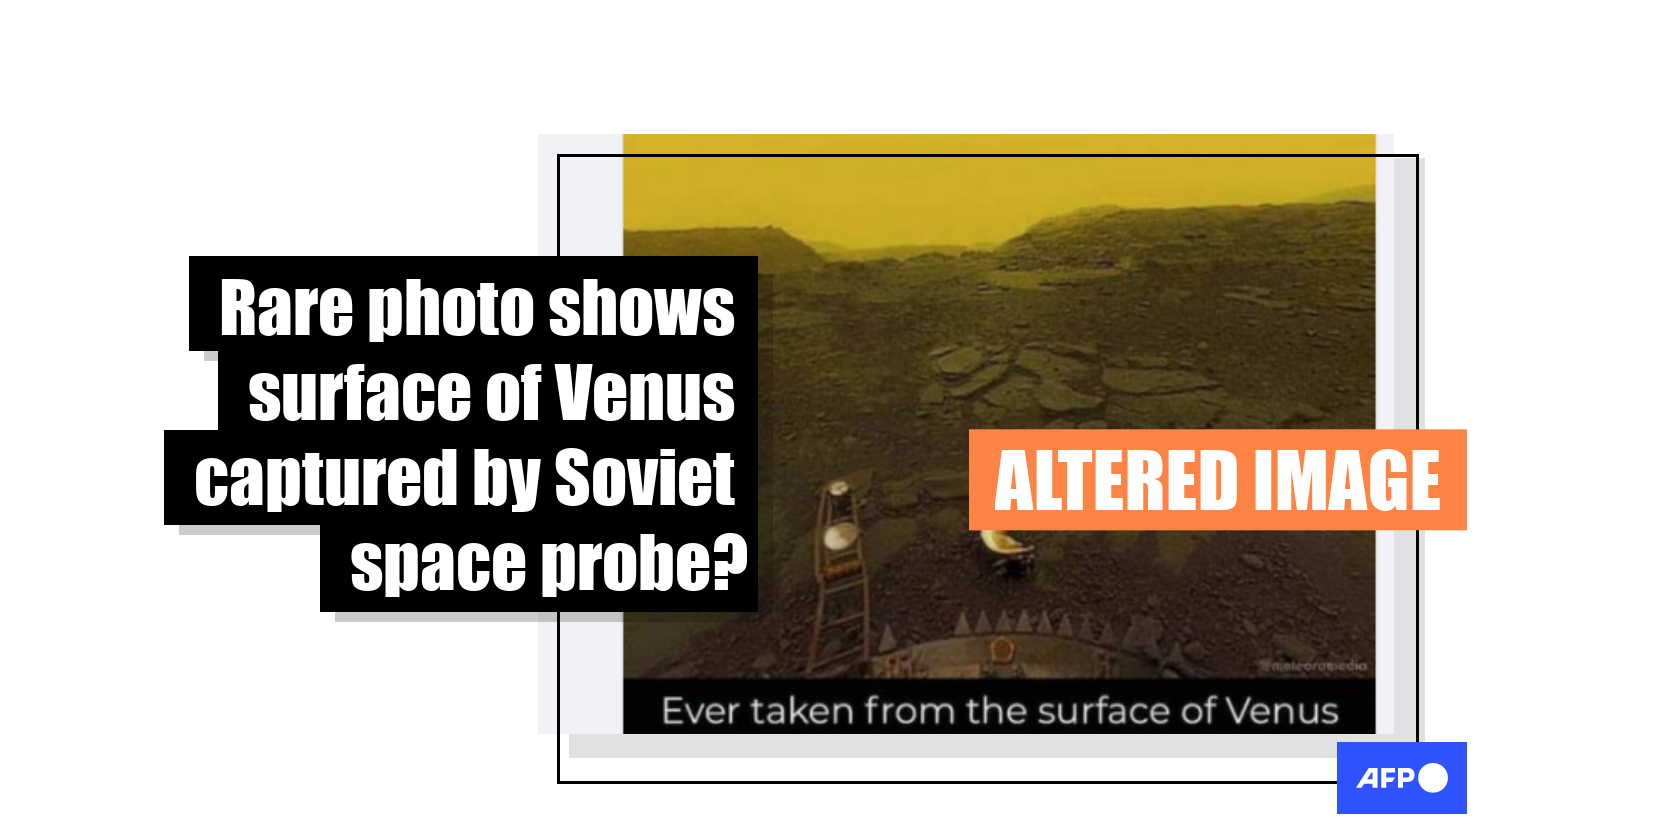 venus surface images